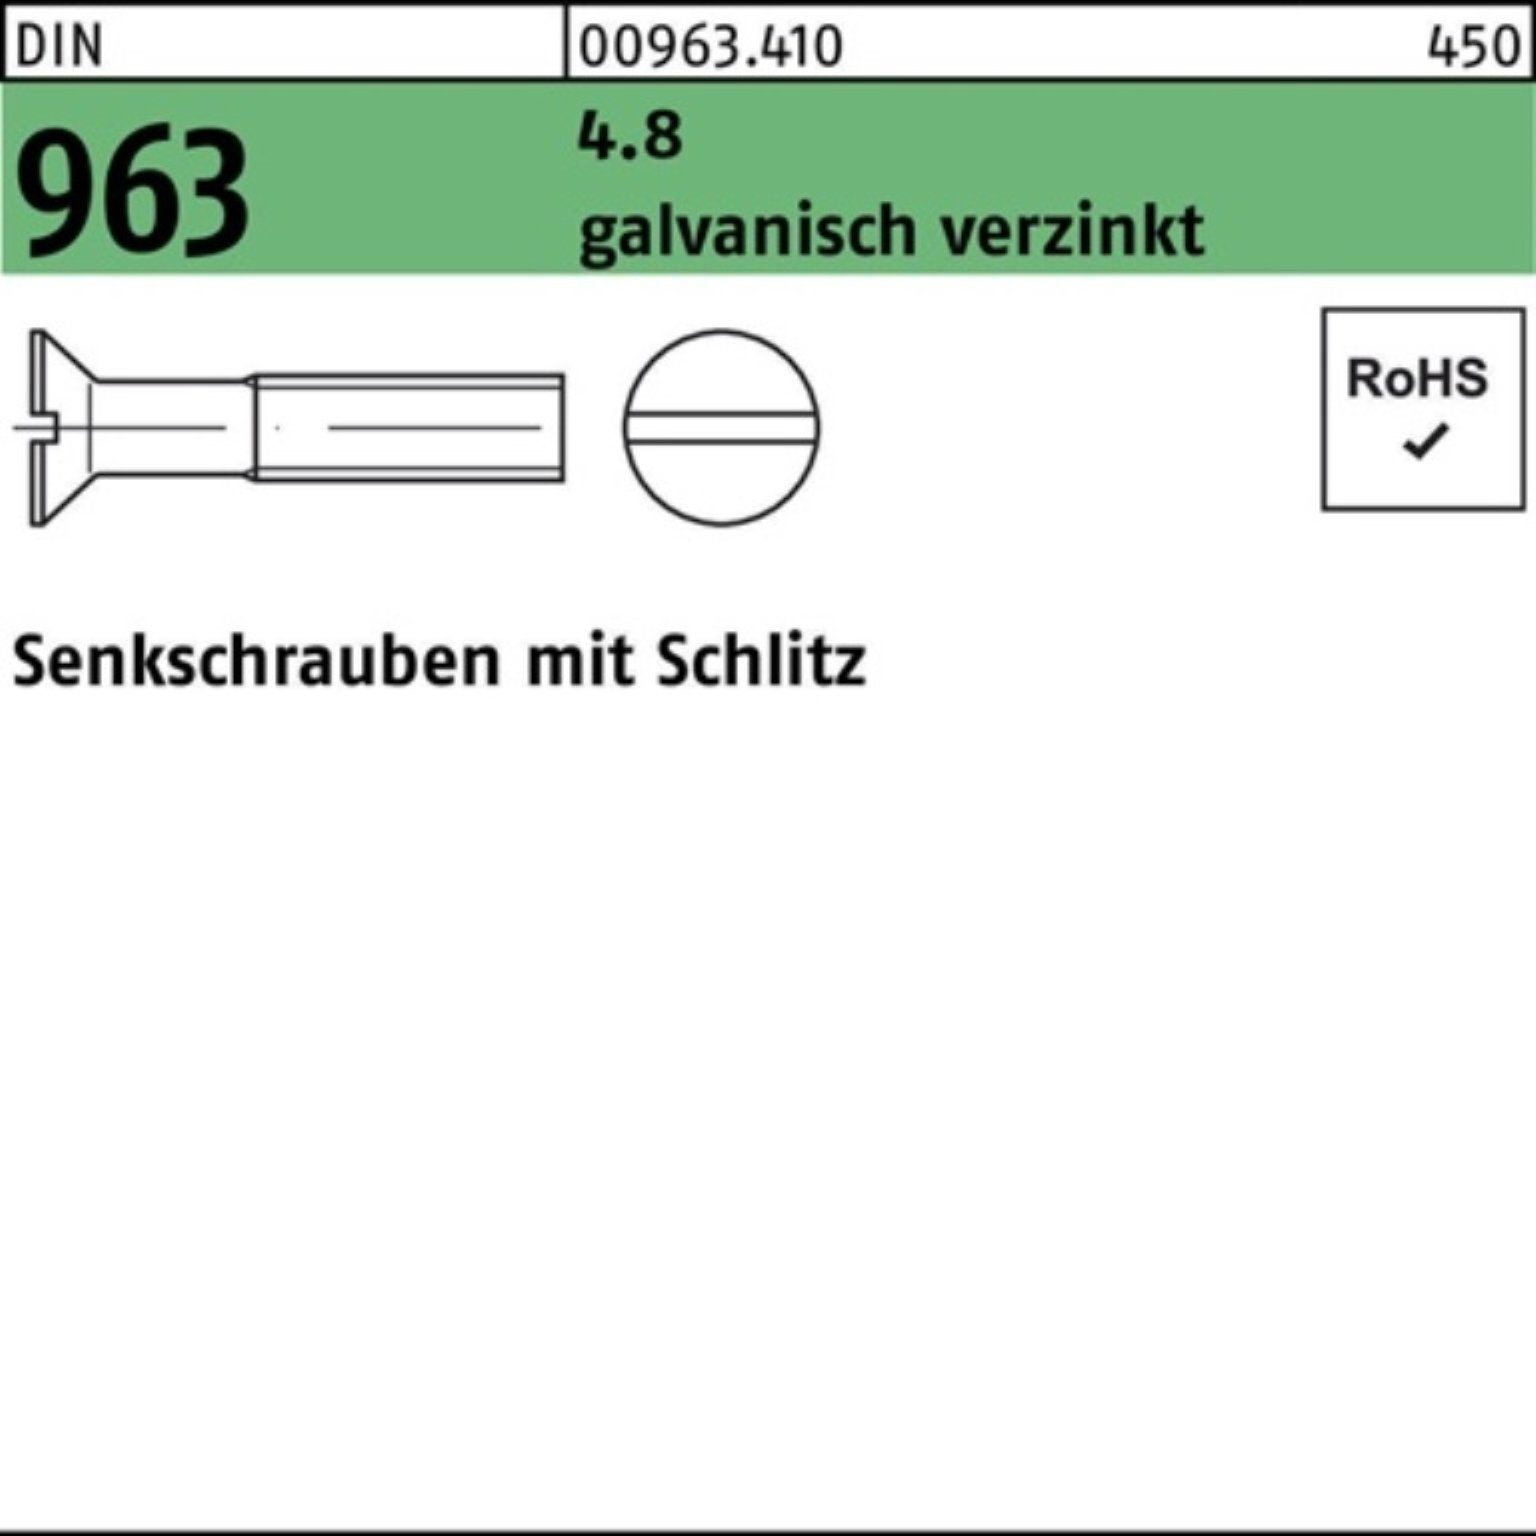 St 4.8 Senkschraube Pack Reyher galv.verz. 2000er DIN Schlitz Senkschraube 963 M4x 16 2000